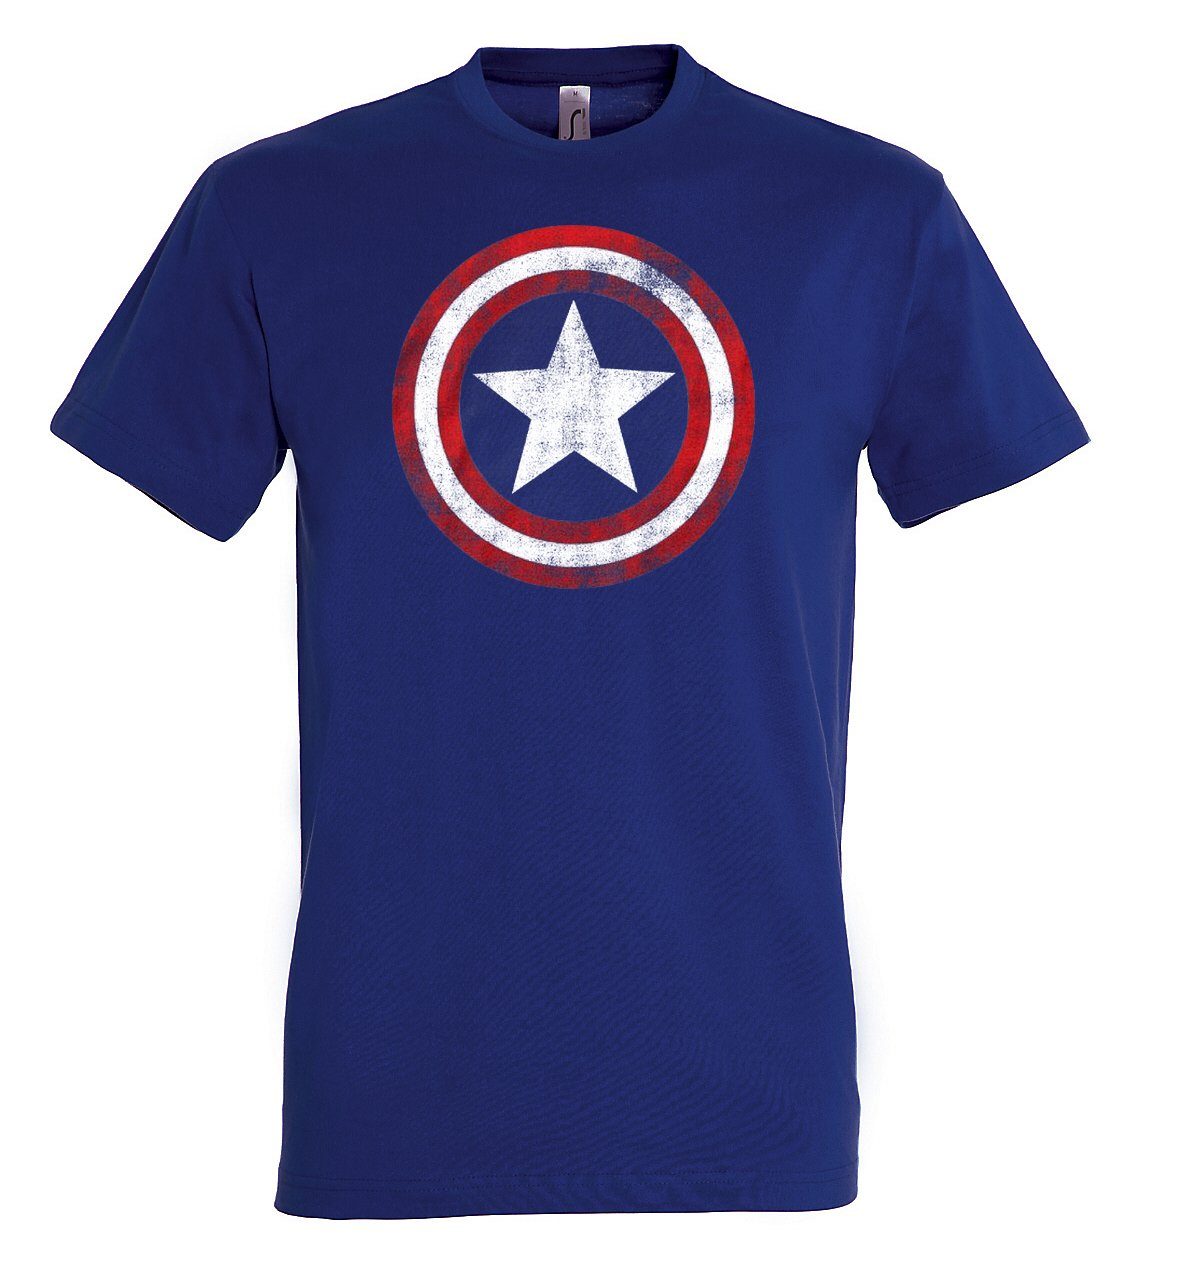 Youth Designz T-Shirt Vintage Herren Frontprint trendigen T-Shirt mit America Navyblau